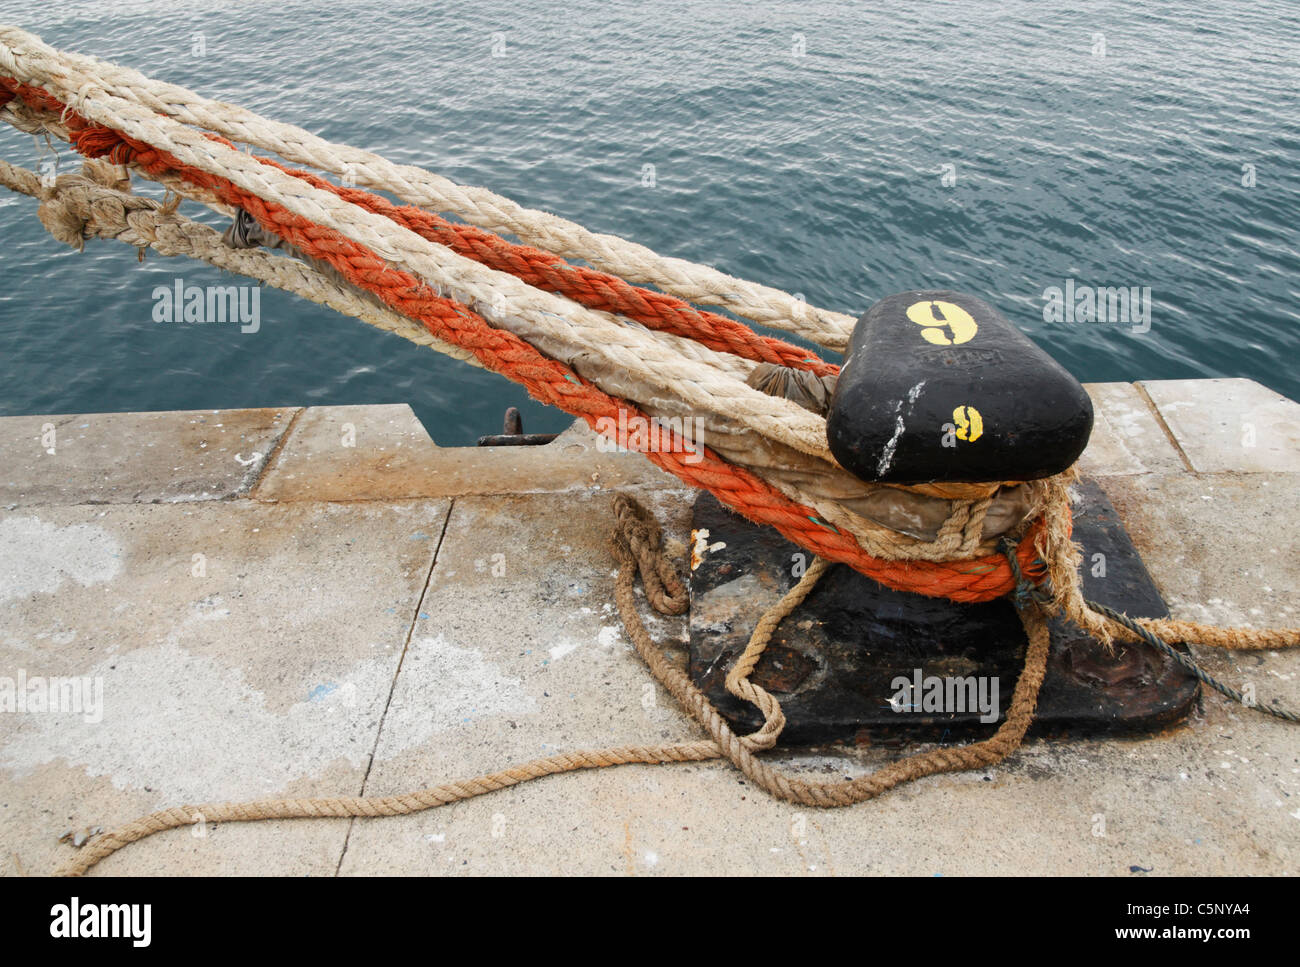 Bollard and mooring ropes at docks Stock Photo